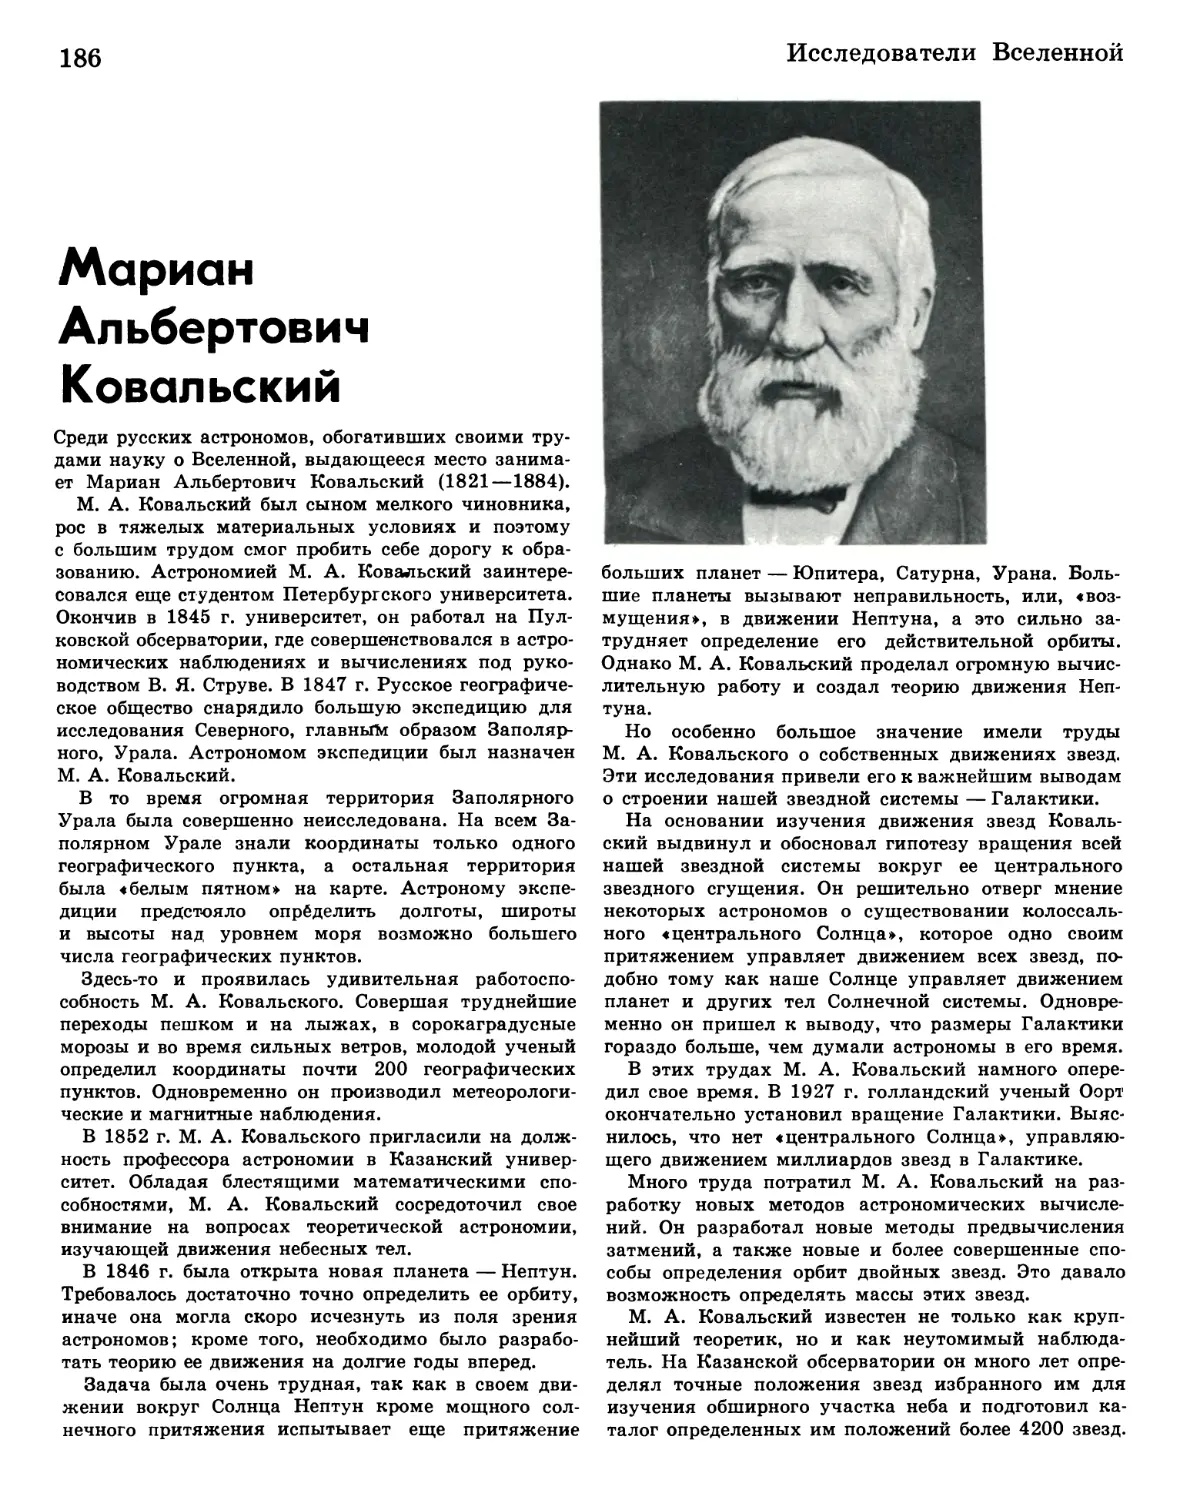 Мариан Альбертович Ковальский